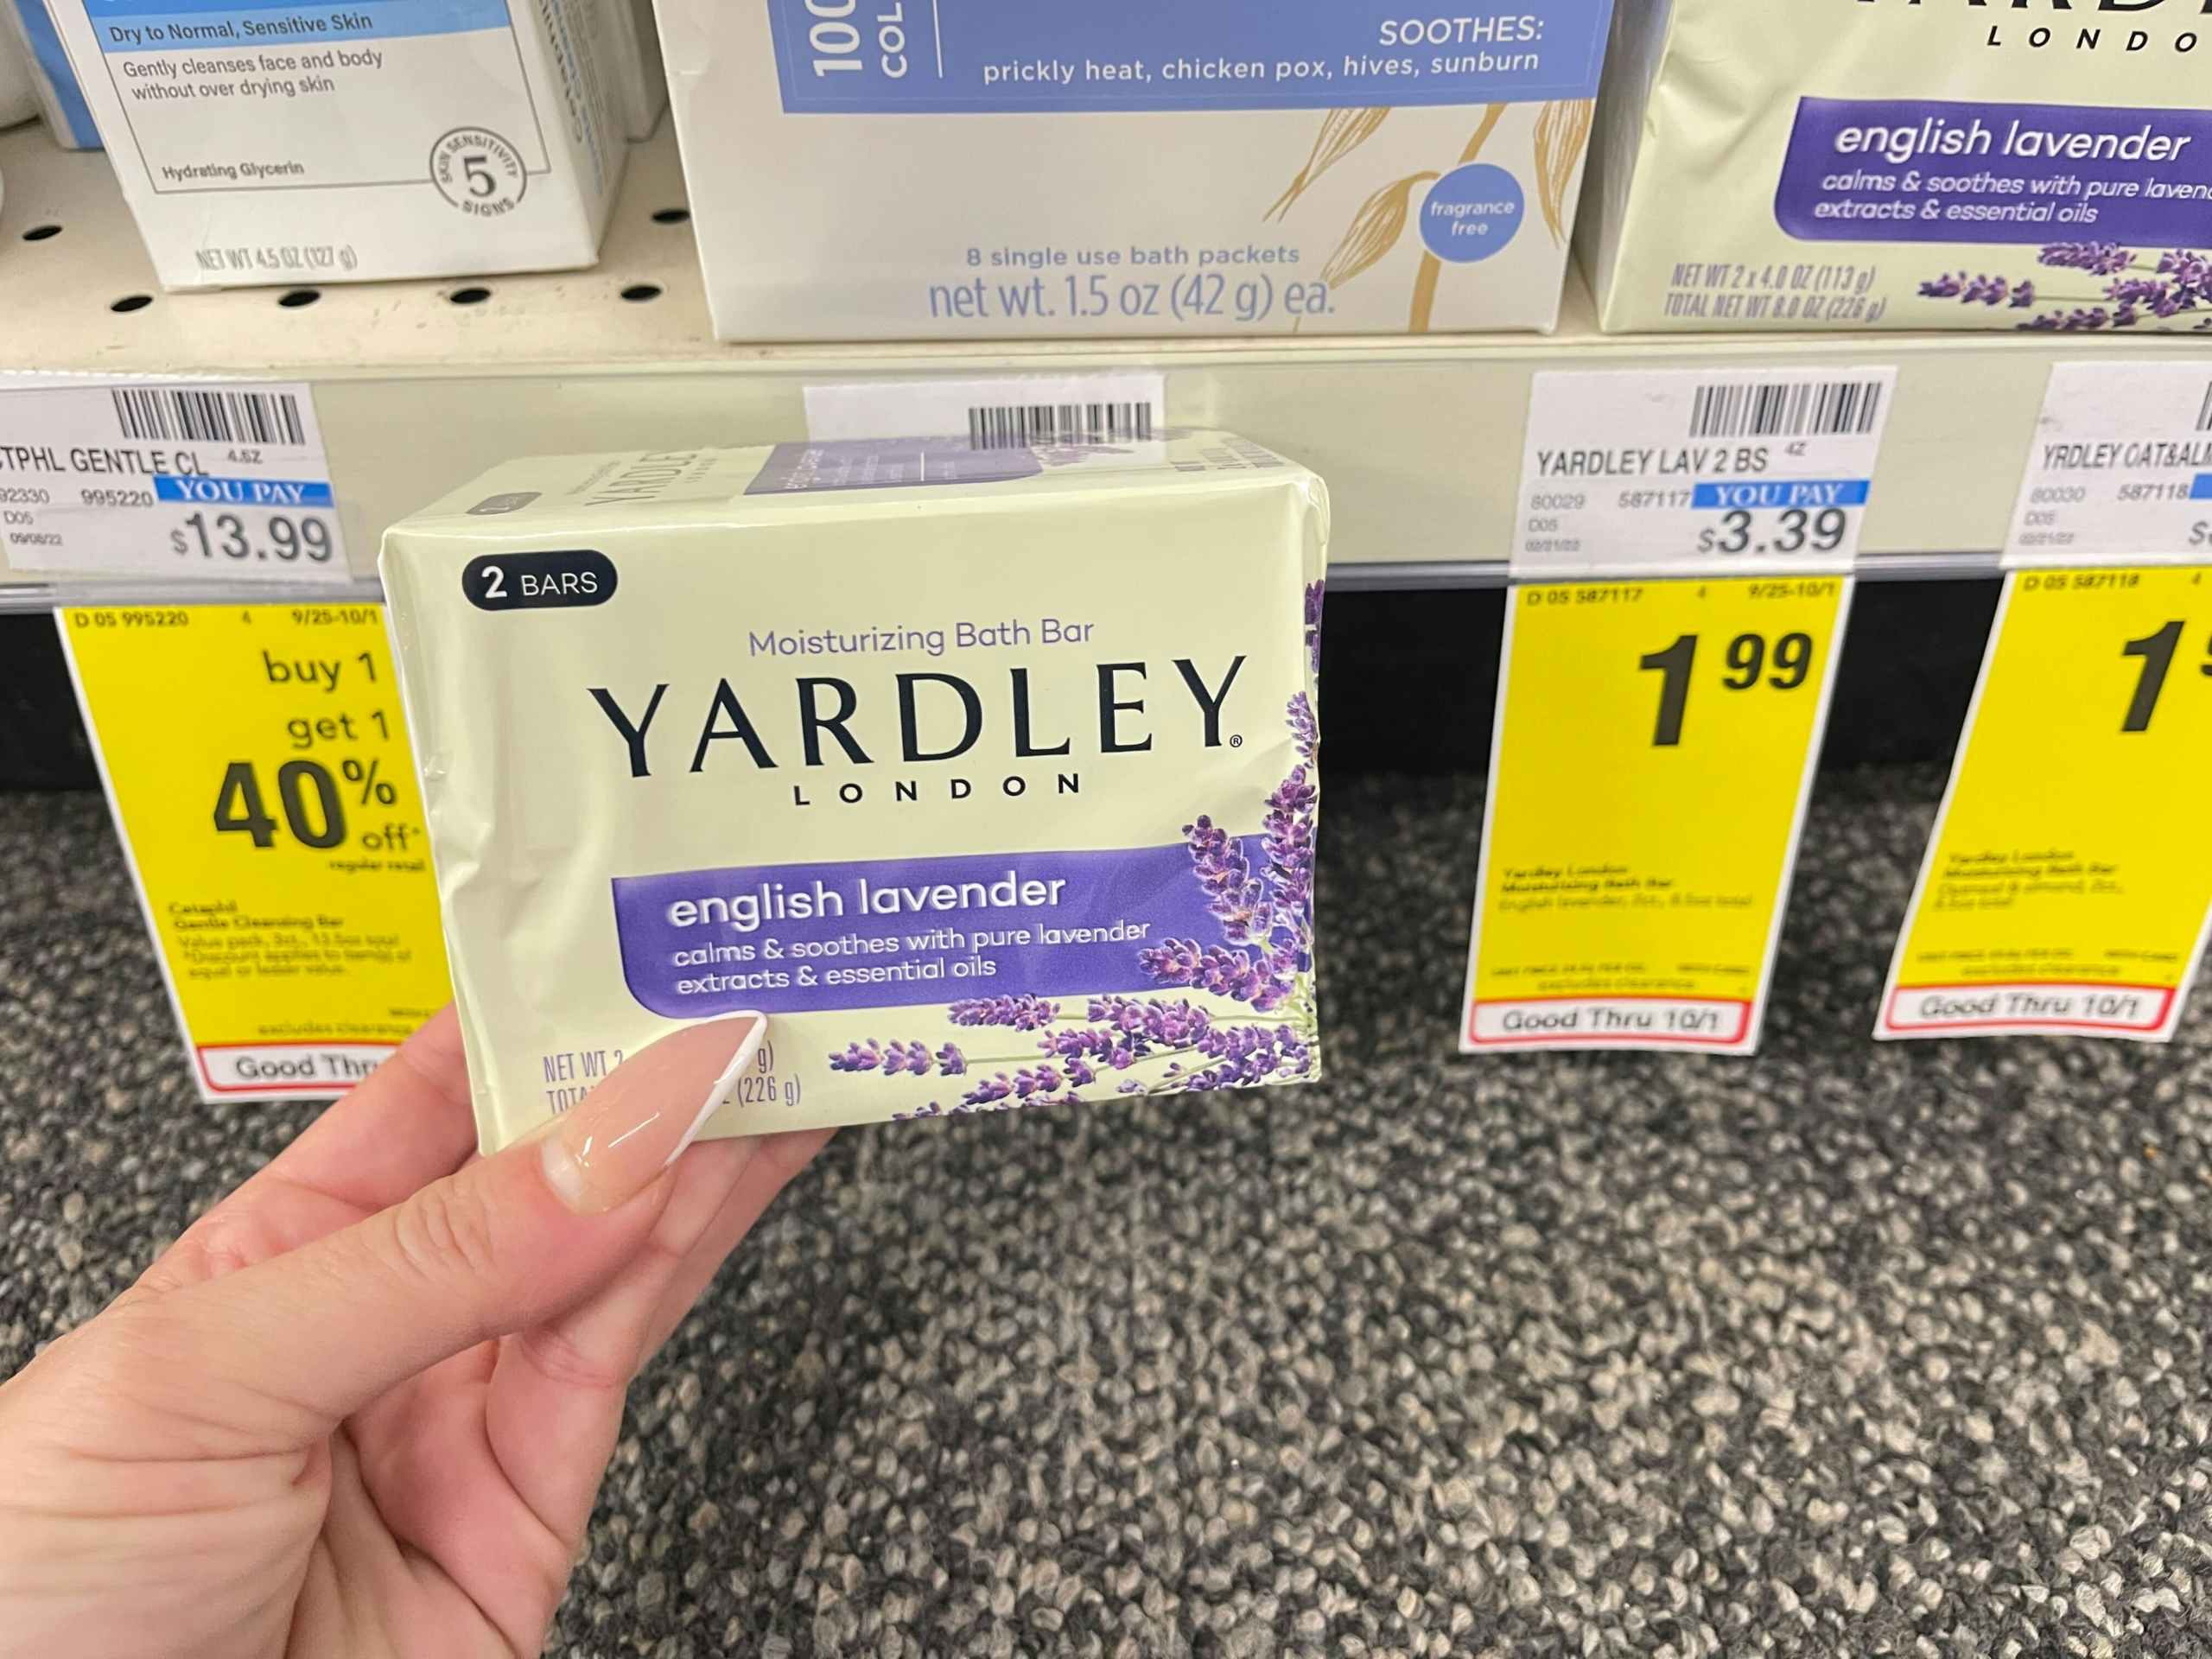 yardley bath bars 2 pack next to $1.99 cvs sales tag